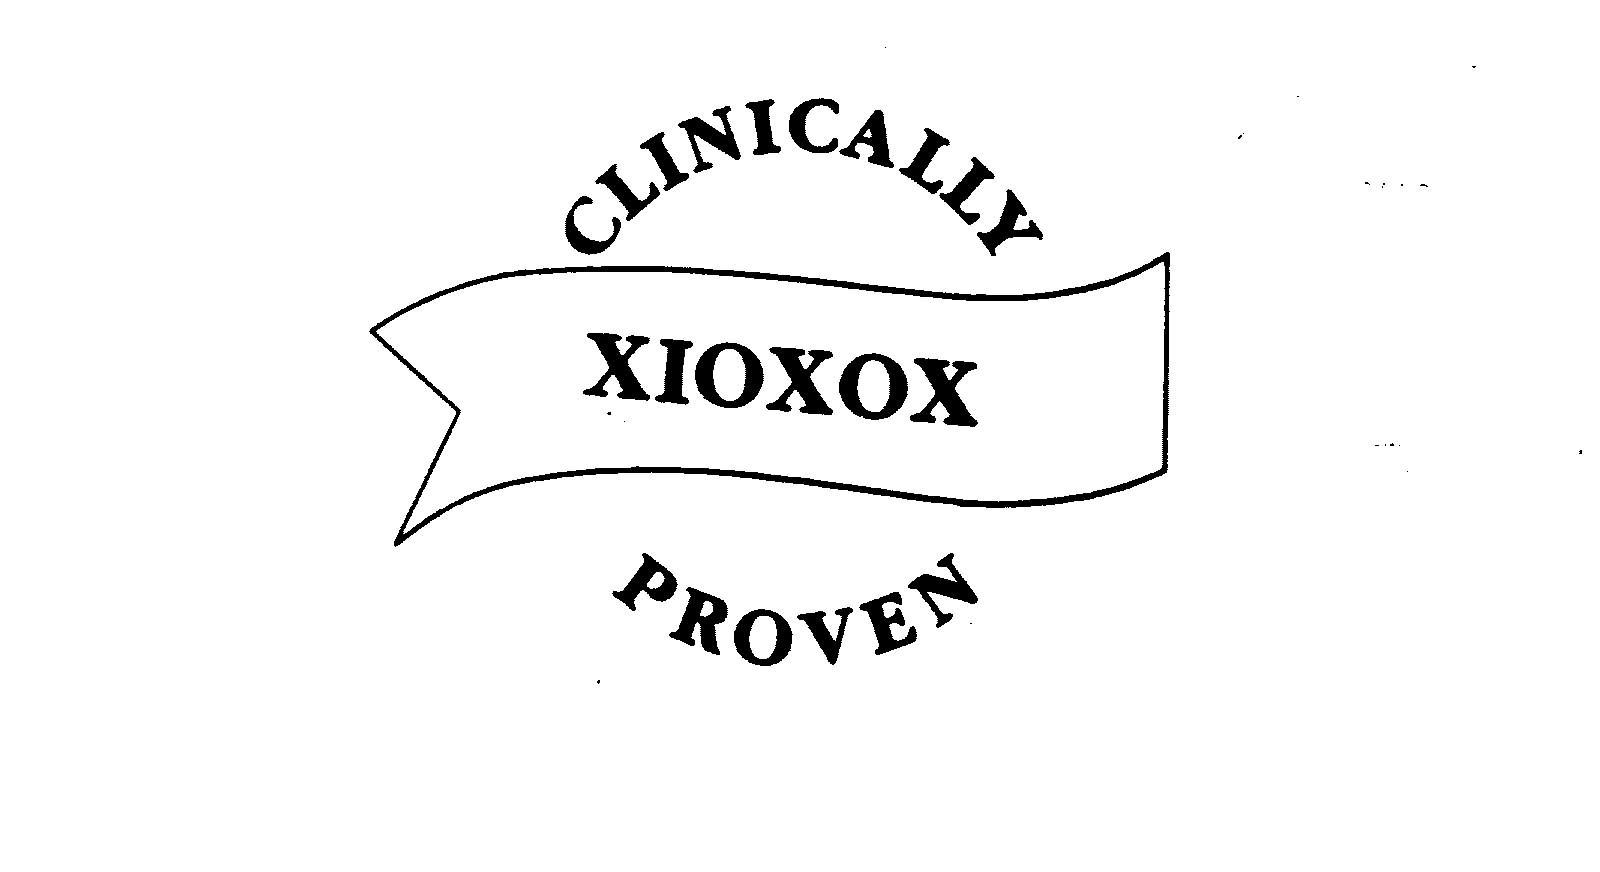  CLINICALLY PROVEN XIOXOX